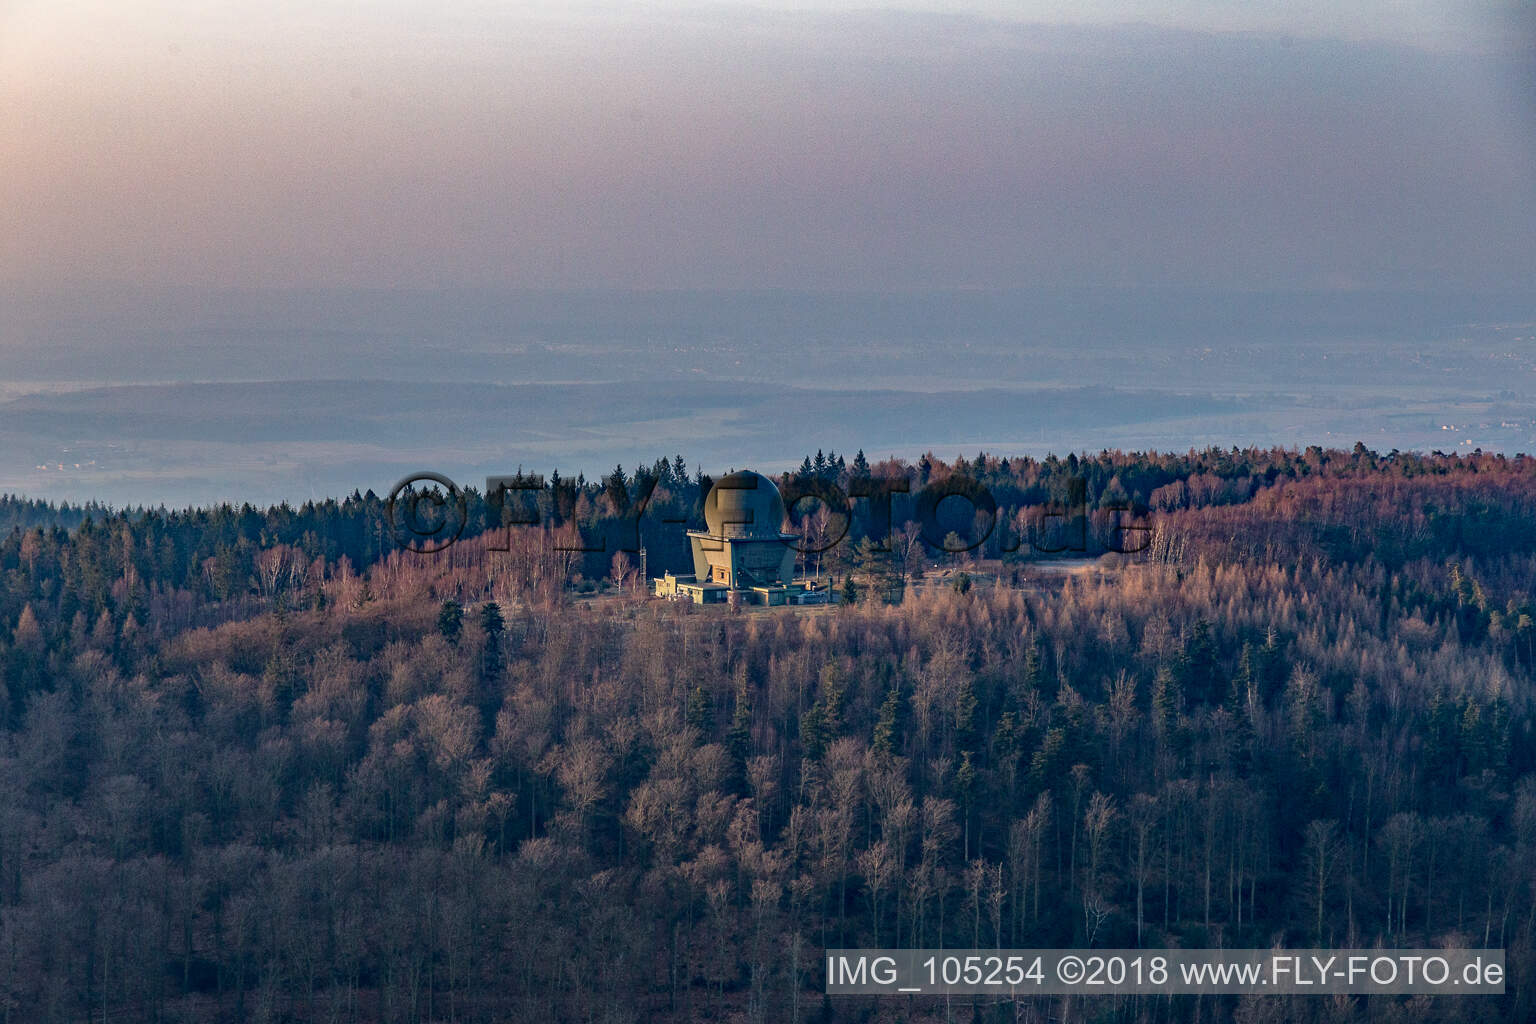 Luftbild von Radarstation in Lampertsloch im Bundesland Bas-Rhin, Frankreich